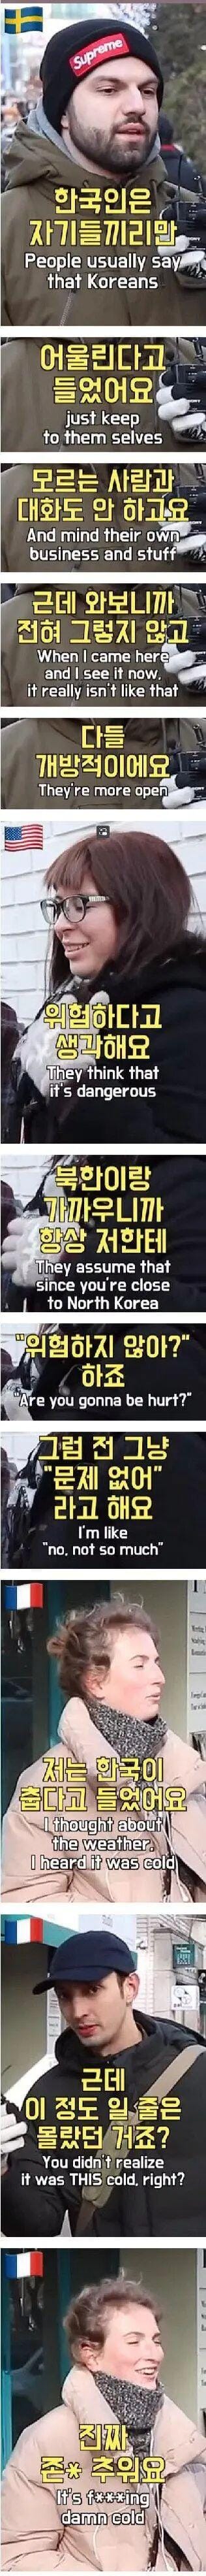 한국에 대한 외국인들의 선입견.jpg